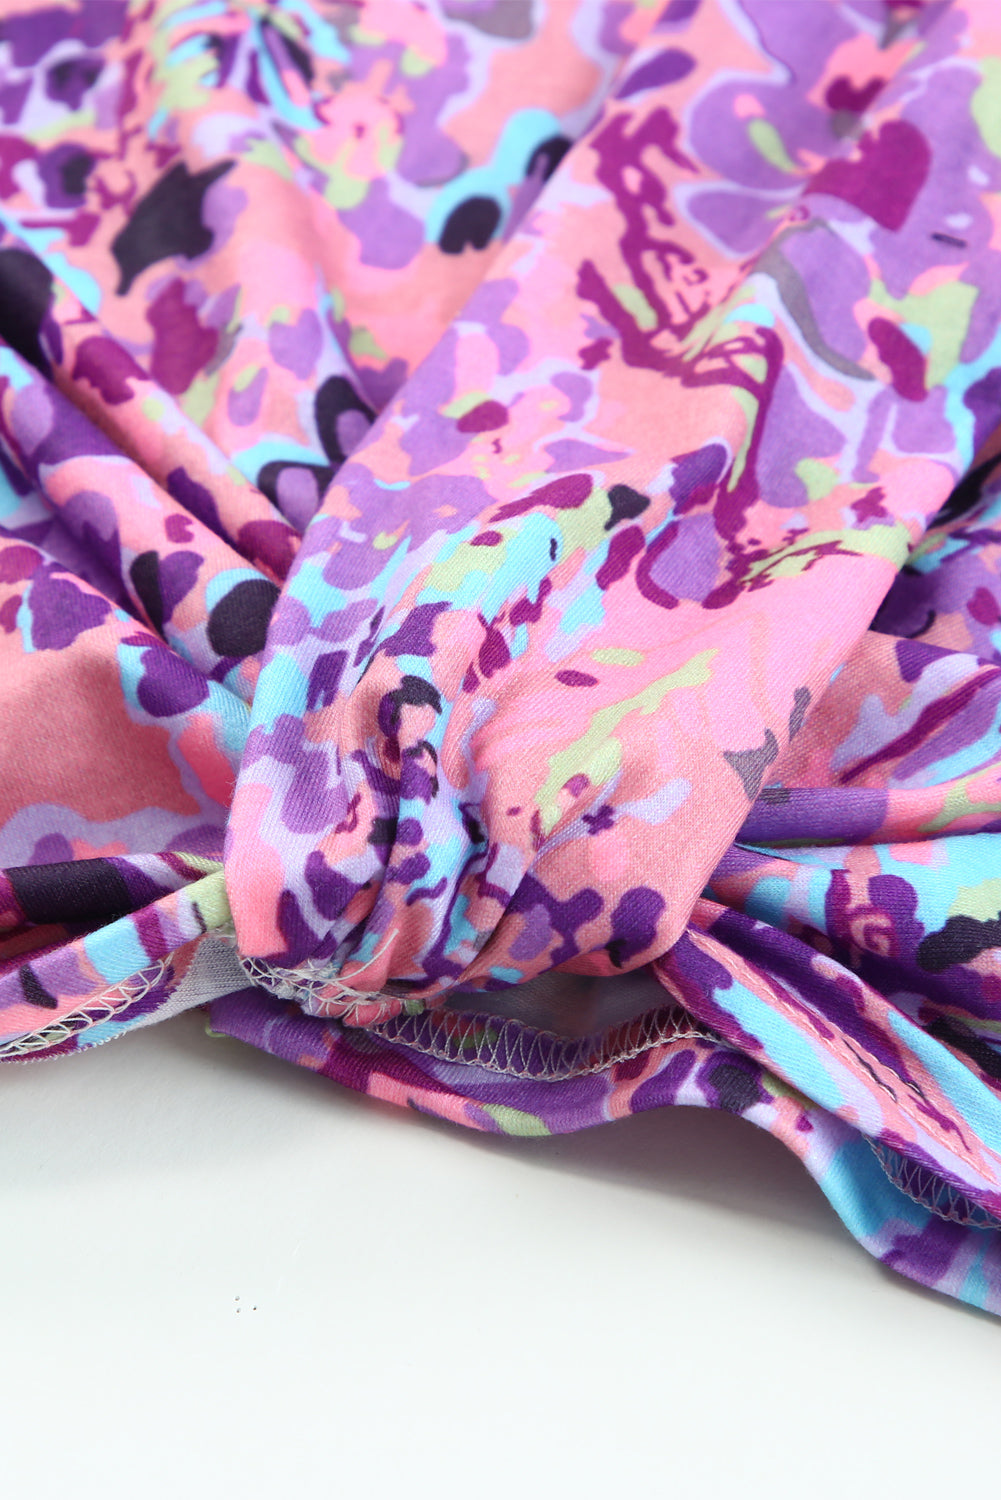 Mehrfarbige, schulterfreie Bluse mit lavendelfarbenem Blumenmuster